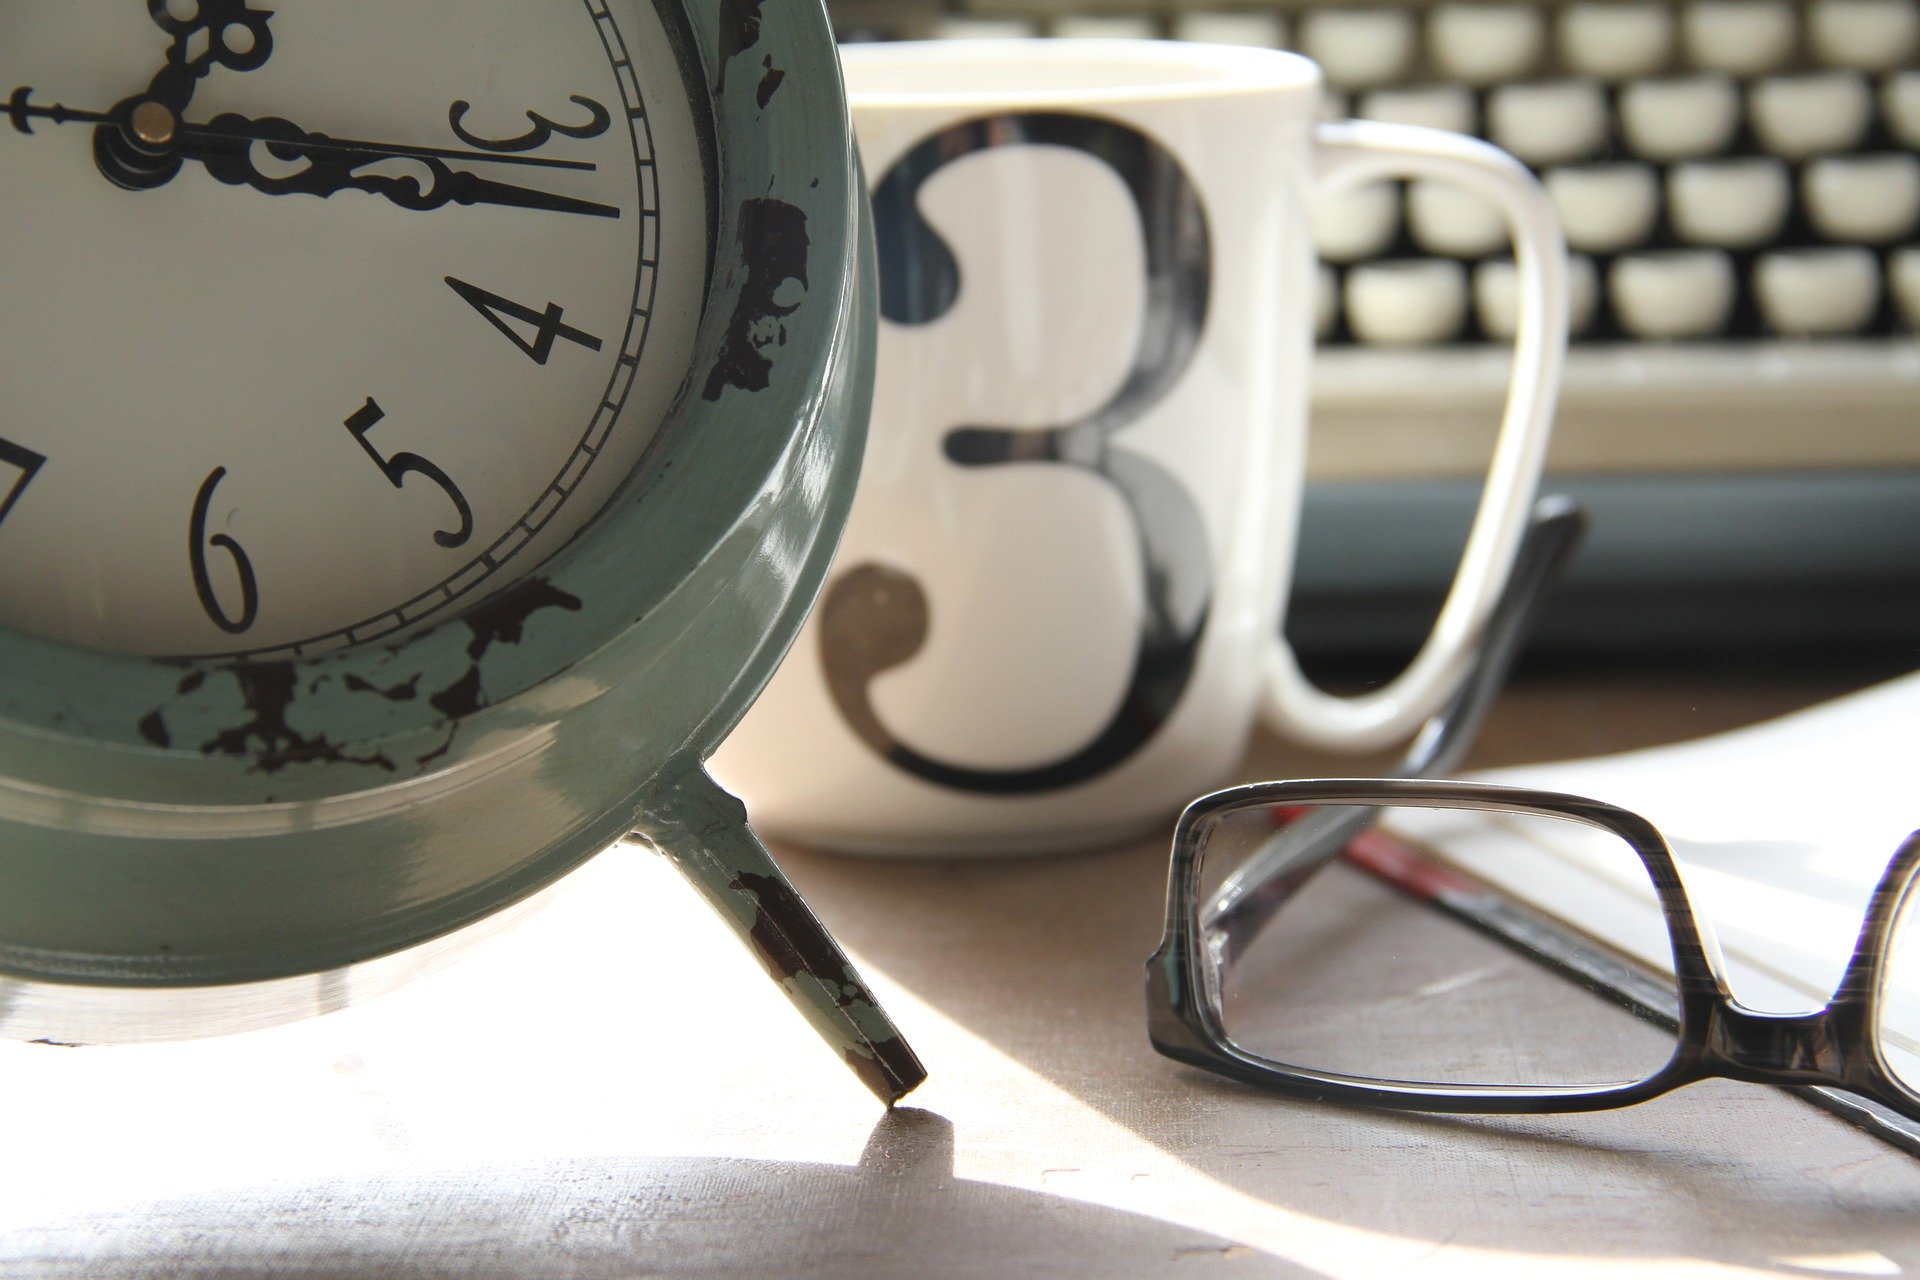 typewriter mug clock glasses